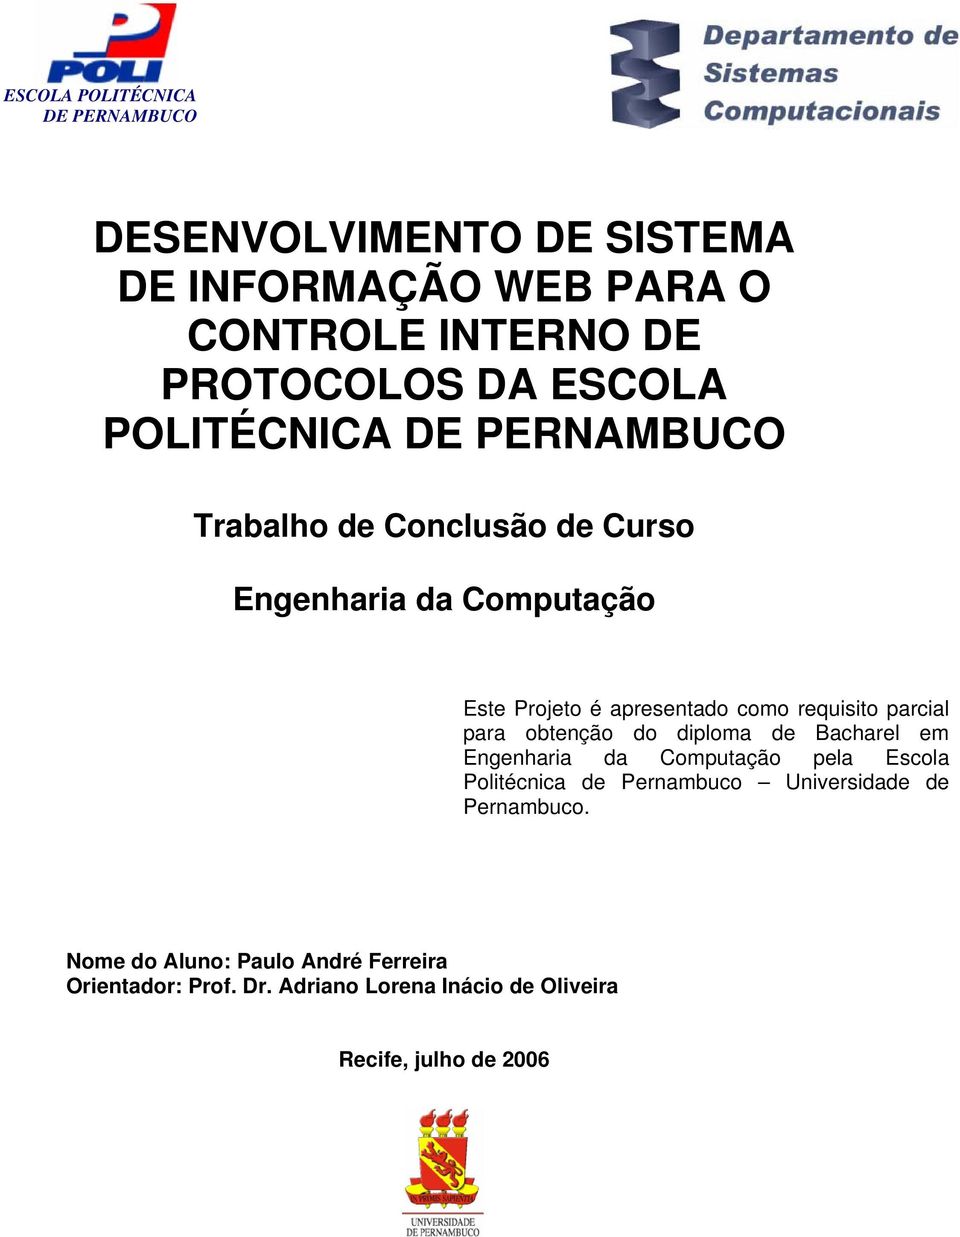 diploma de Bacharel em Engenharia da Computação pela Escola Politécnica de Pernambuco Universidade de Pernambuco.